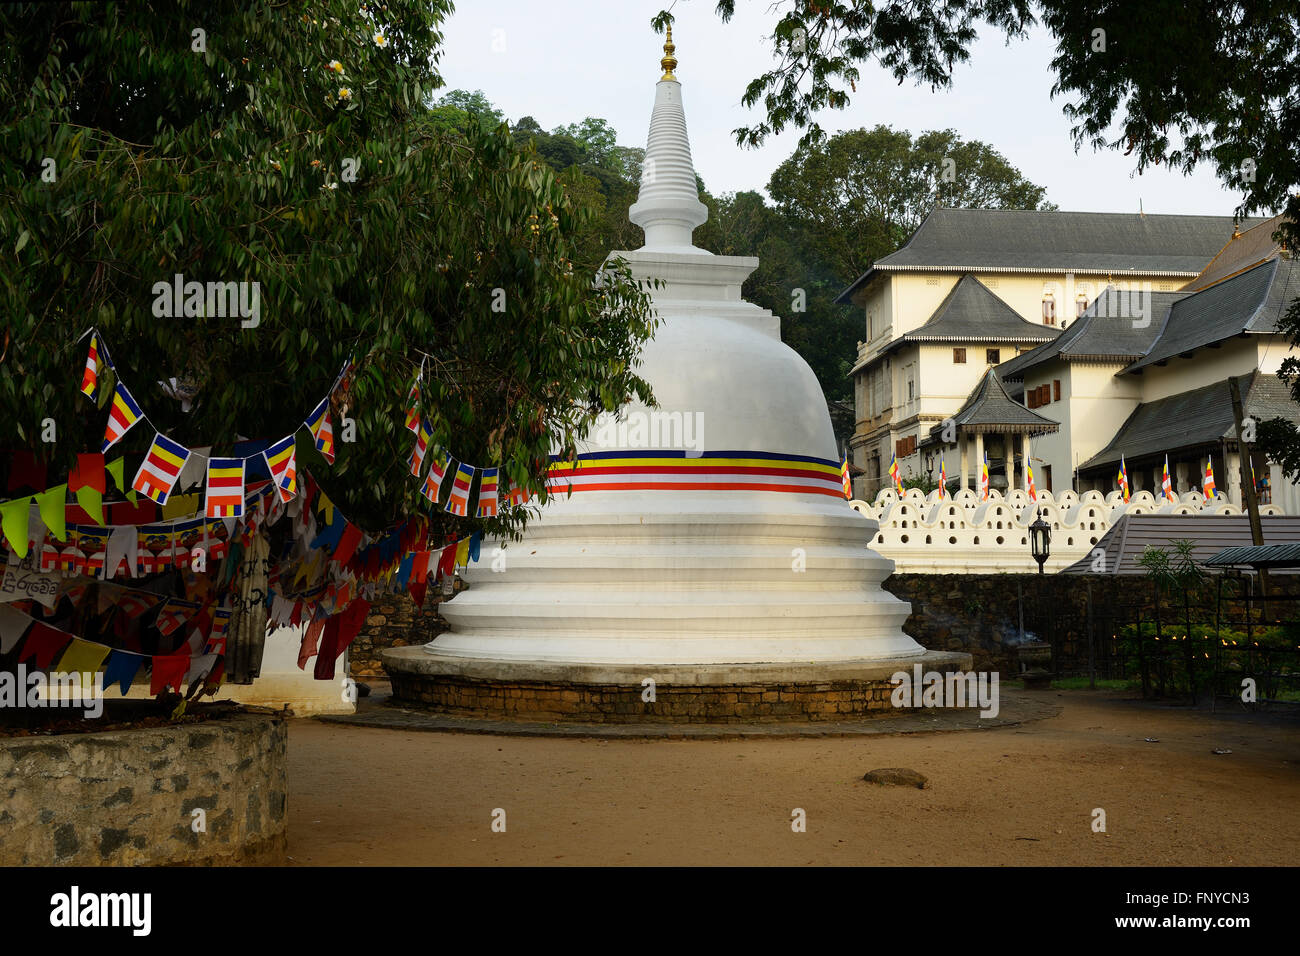 Sri dalada maligawa ou le temple de la dent sacrée est un temple bouddhiste dans la ville de Kandy, Sri Lanka Banque D'Images